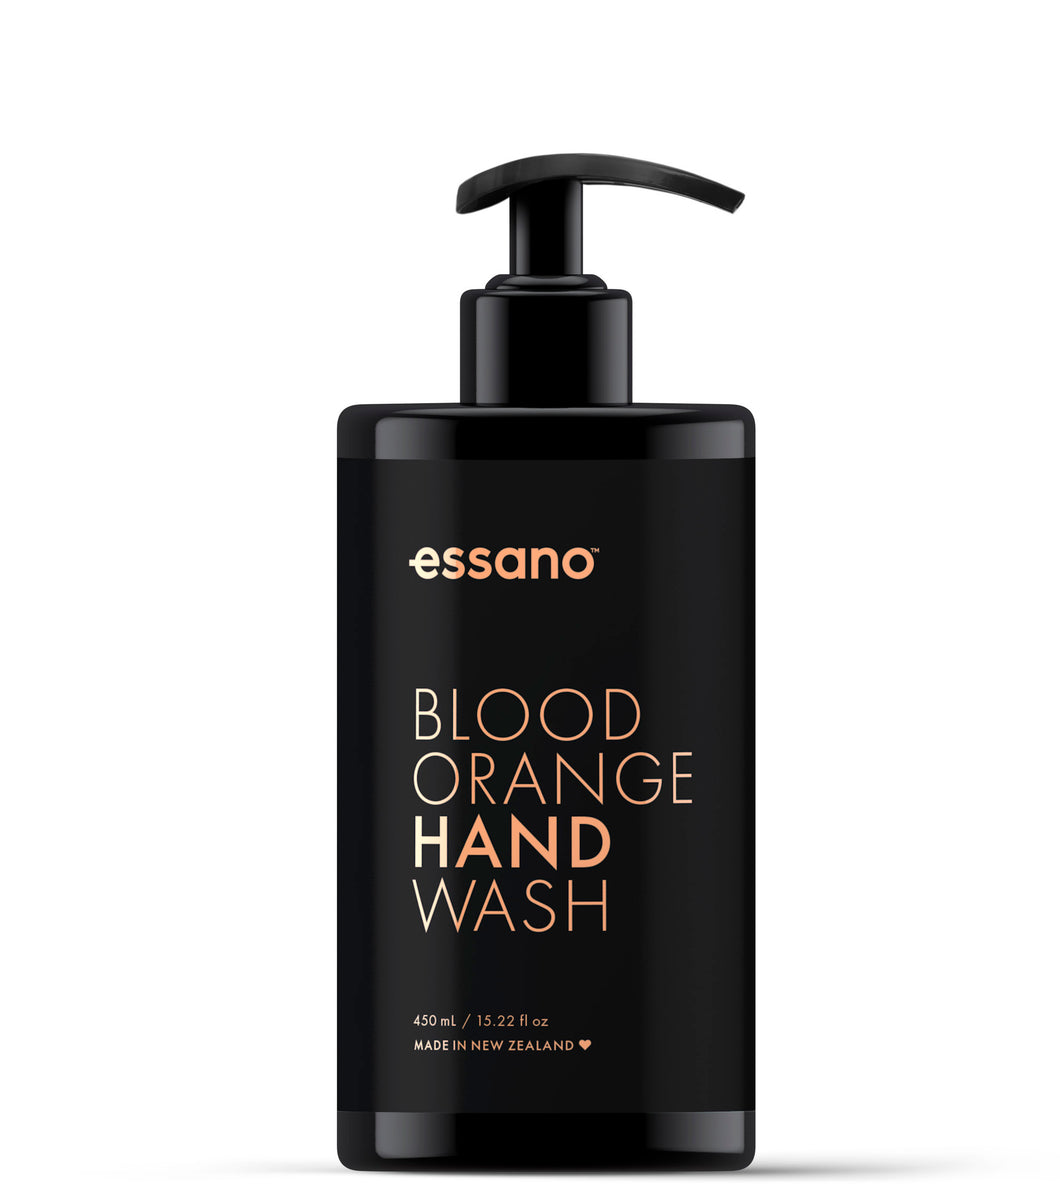 Blood Orange Hand Wash